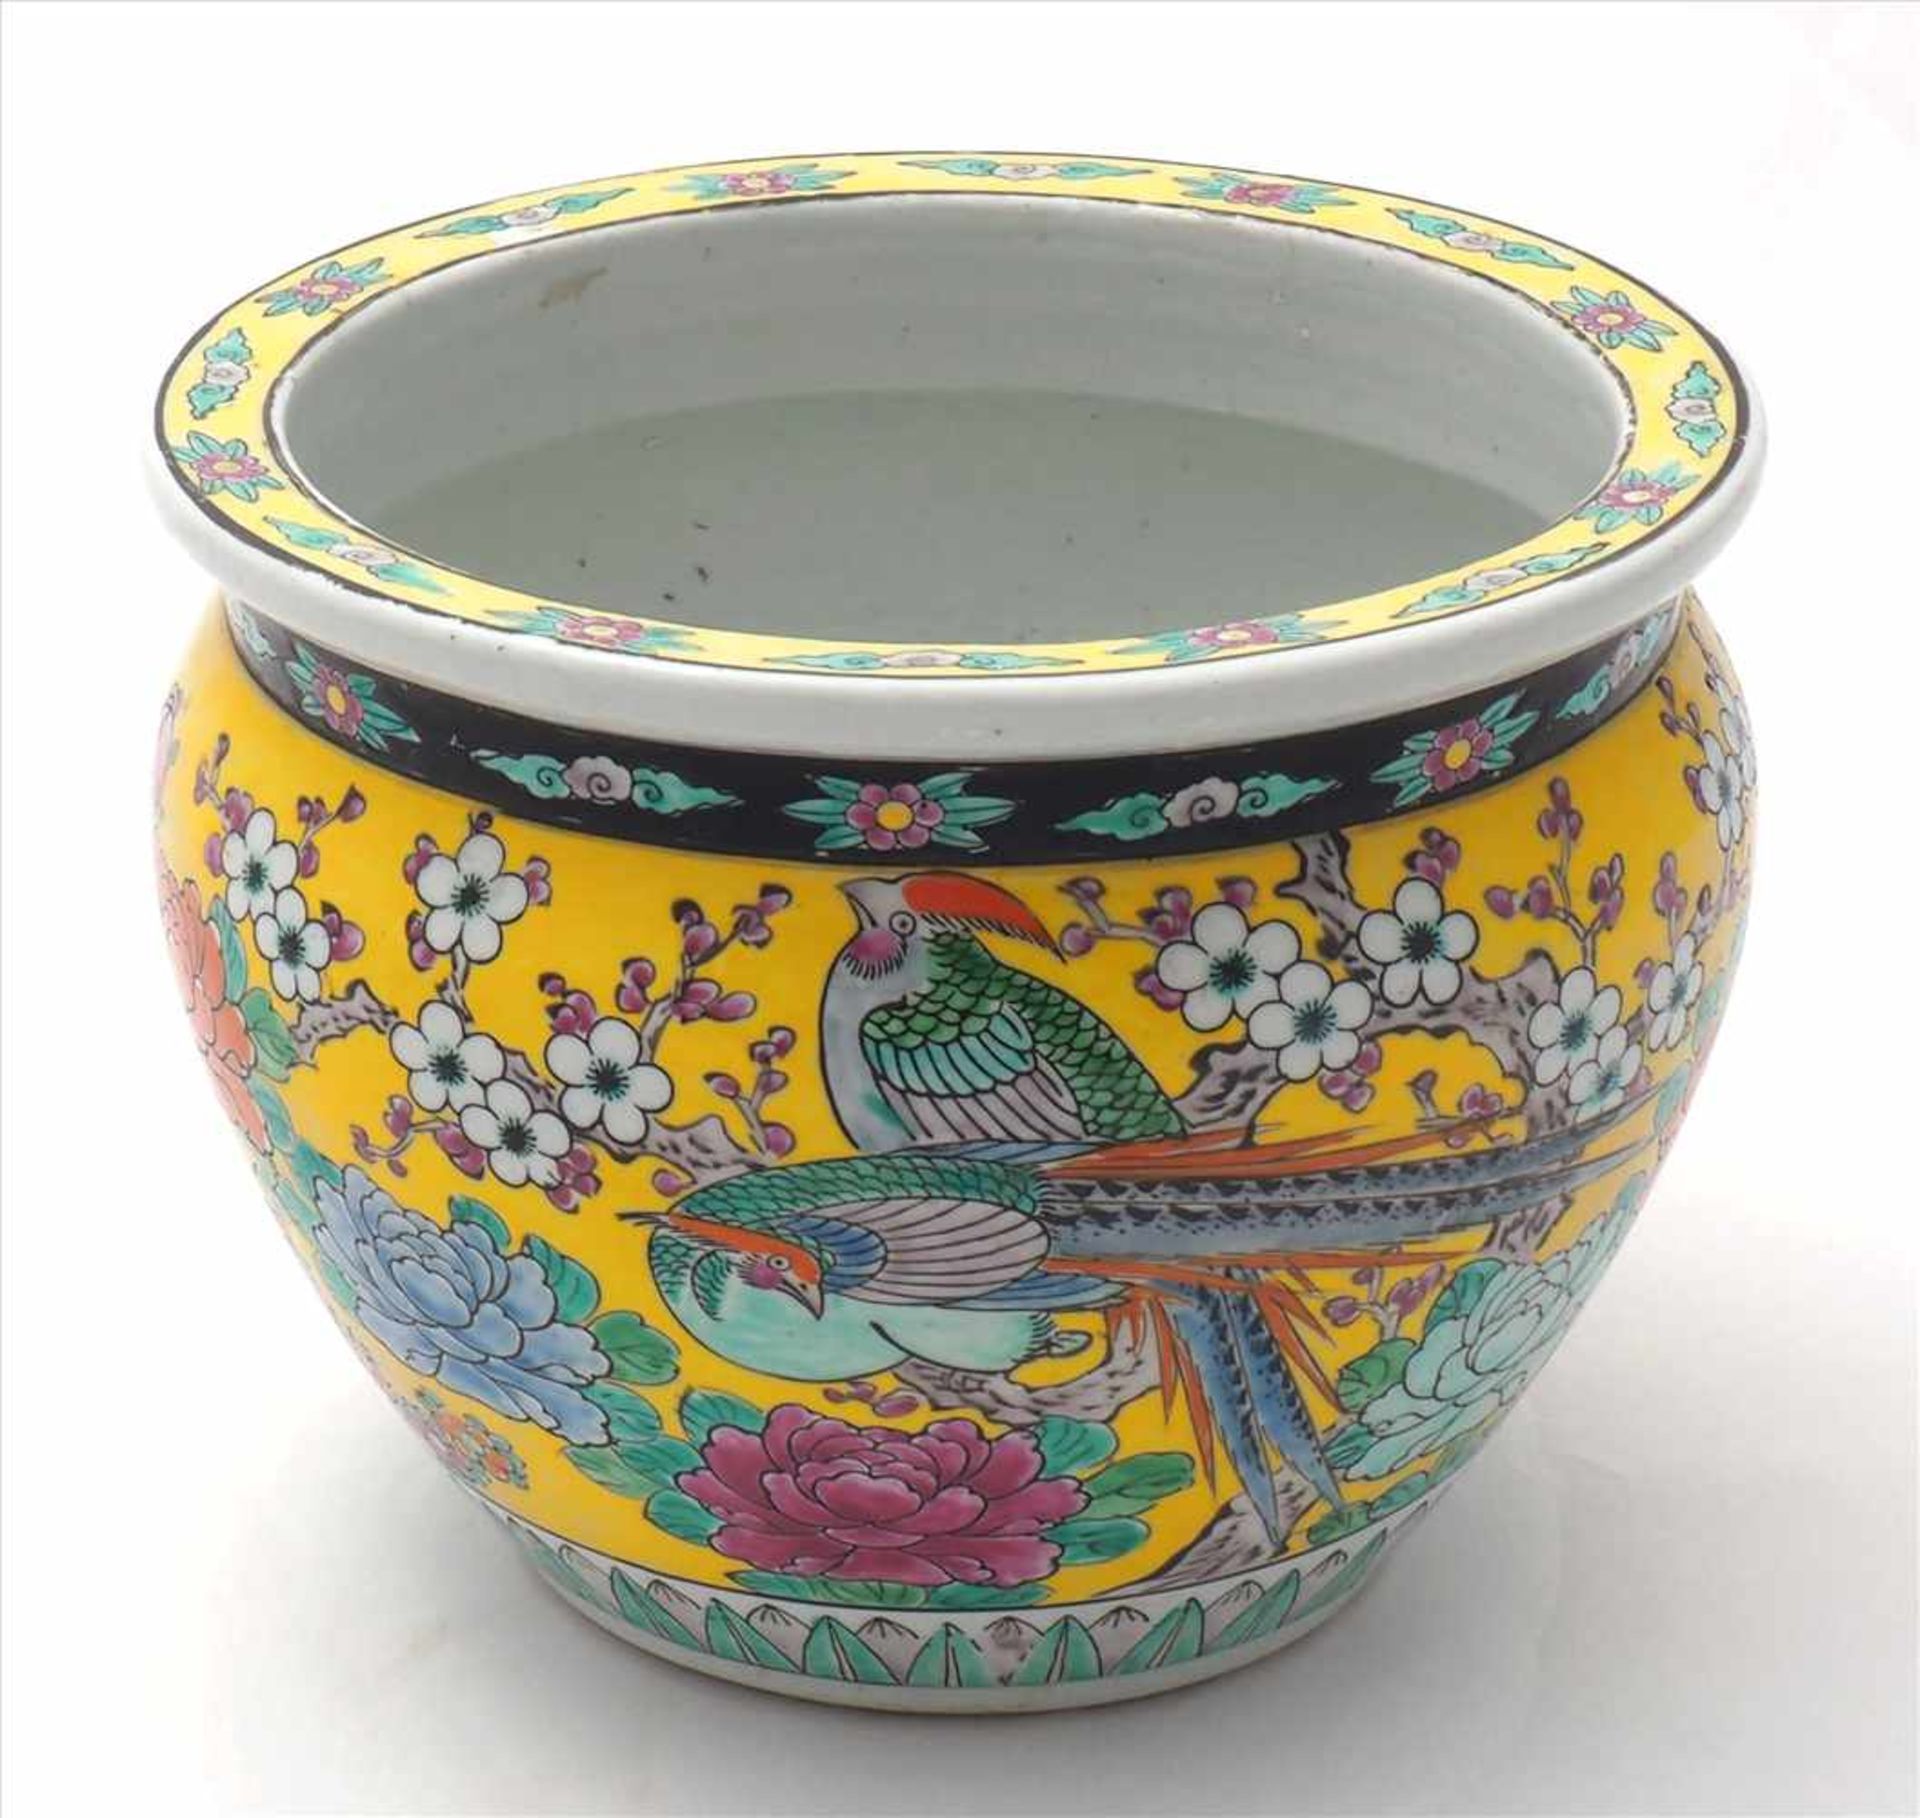 FishbowlChina Qing Dynastie um 1900. Keramikgefäß mit reicher Emaillemalerei mit Vögeln in